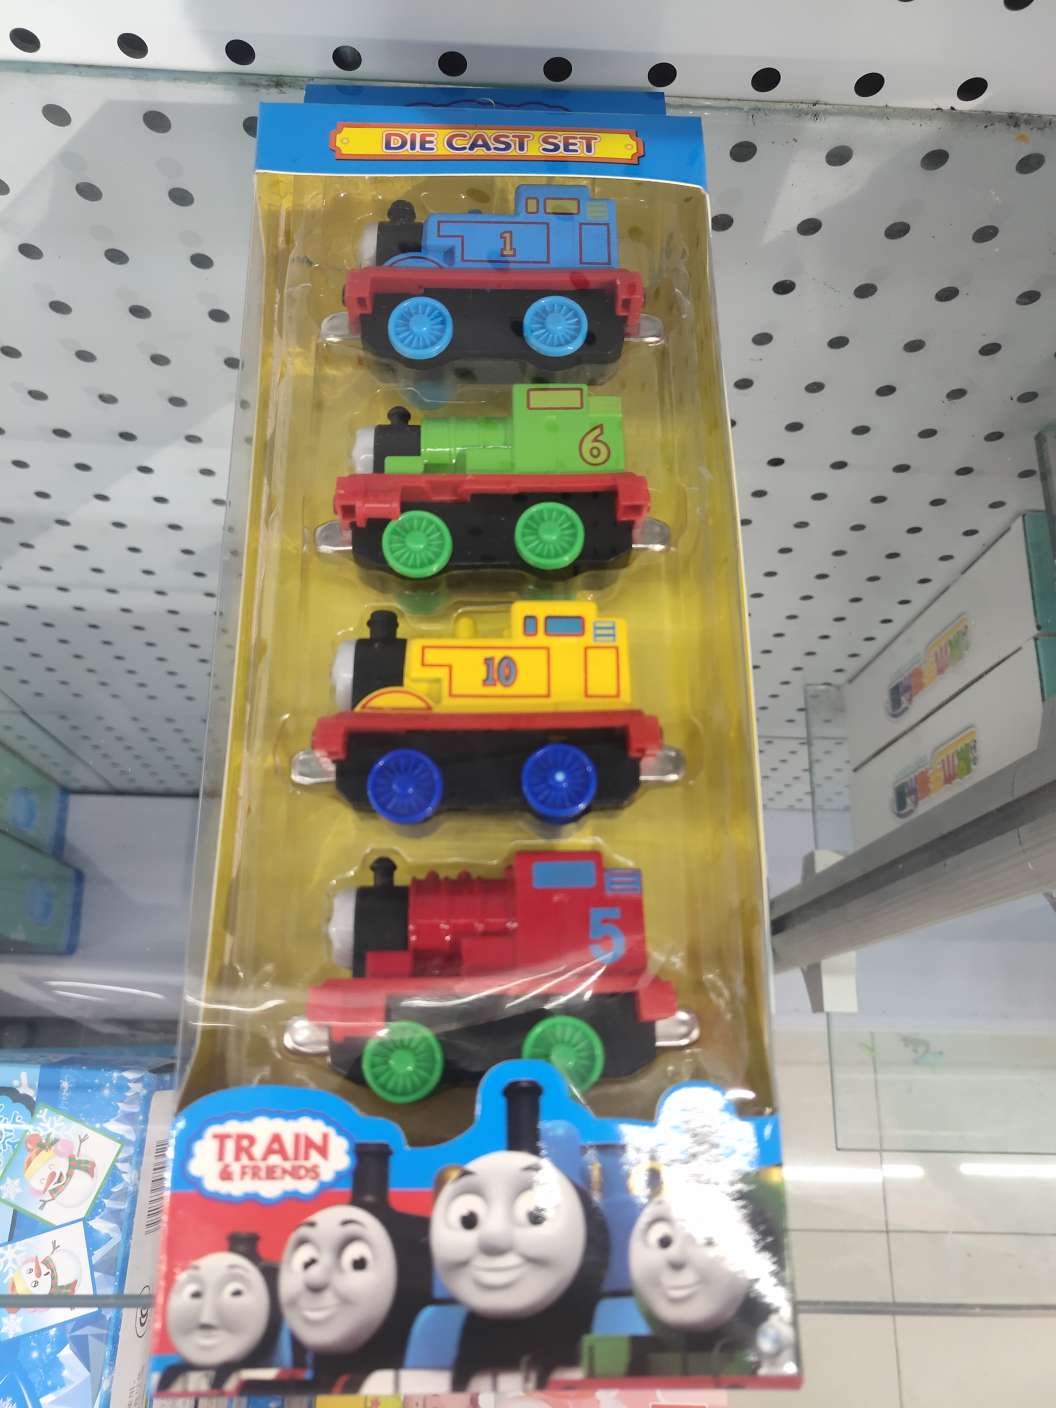 火车头模型玩具可爱时尚造型 益智儿童玩具趣味玩具